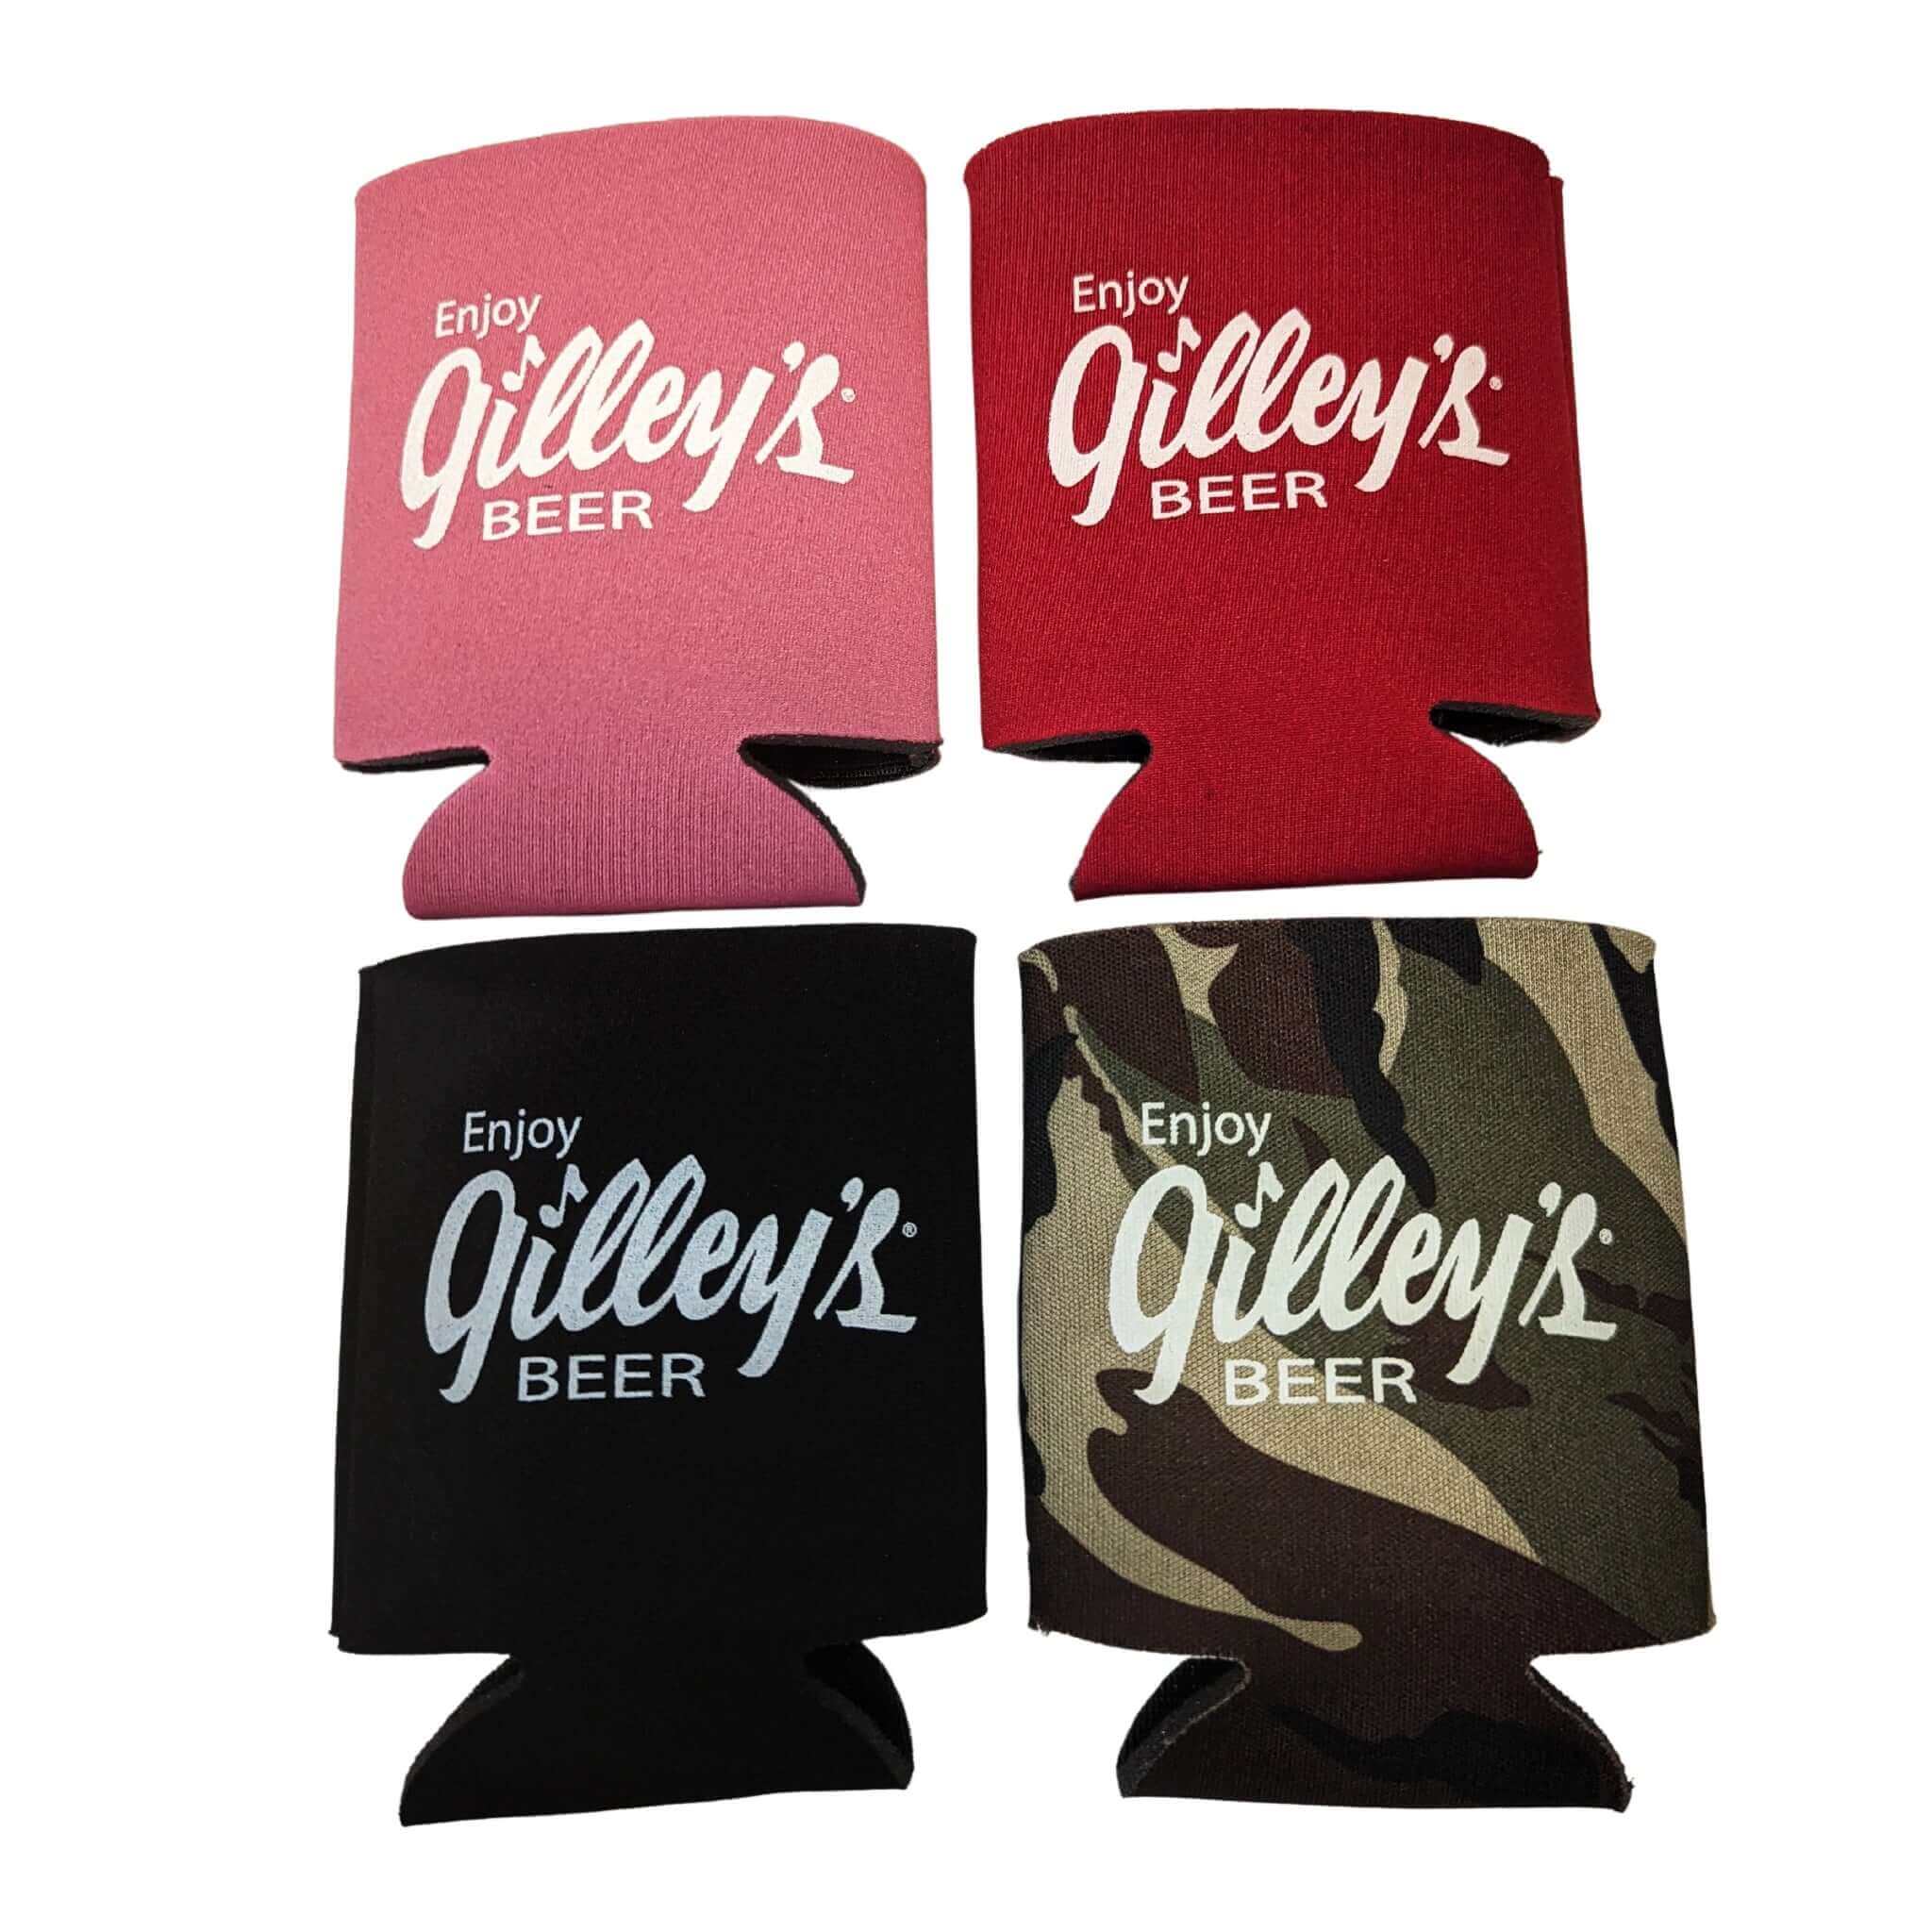 http://gilleysfoods.com/cdn/shop/products/enjoy-gilleys-beer-can-holder-166808.jpg?v=1701908587